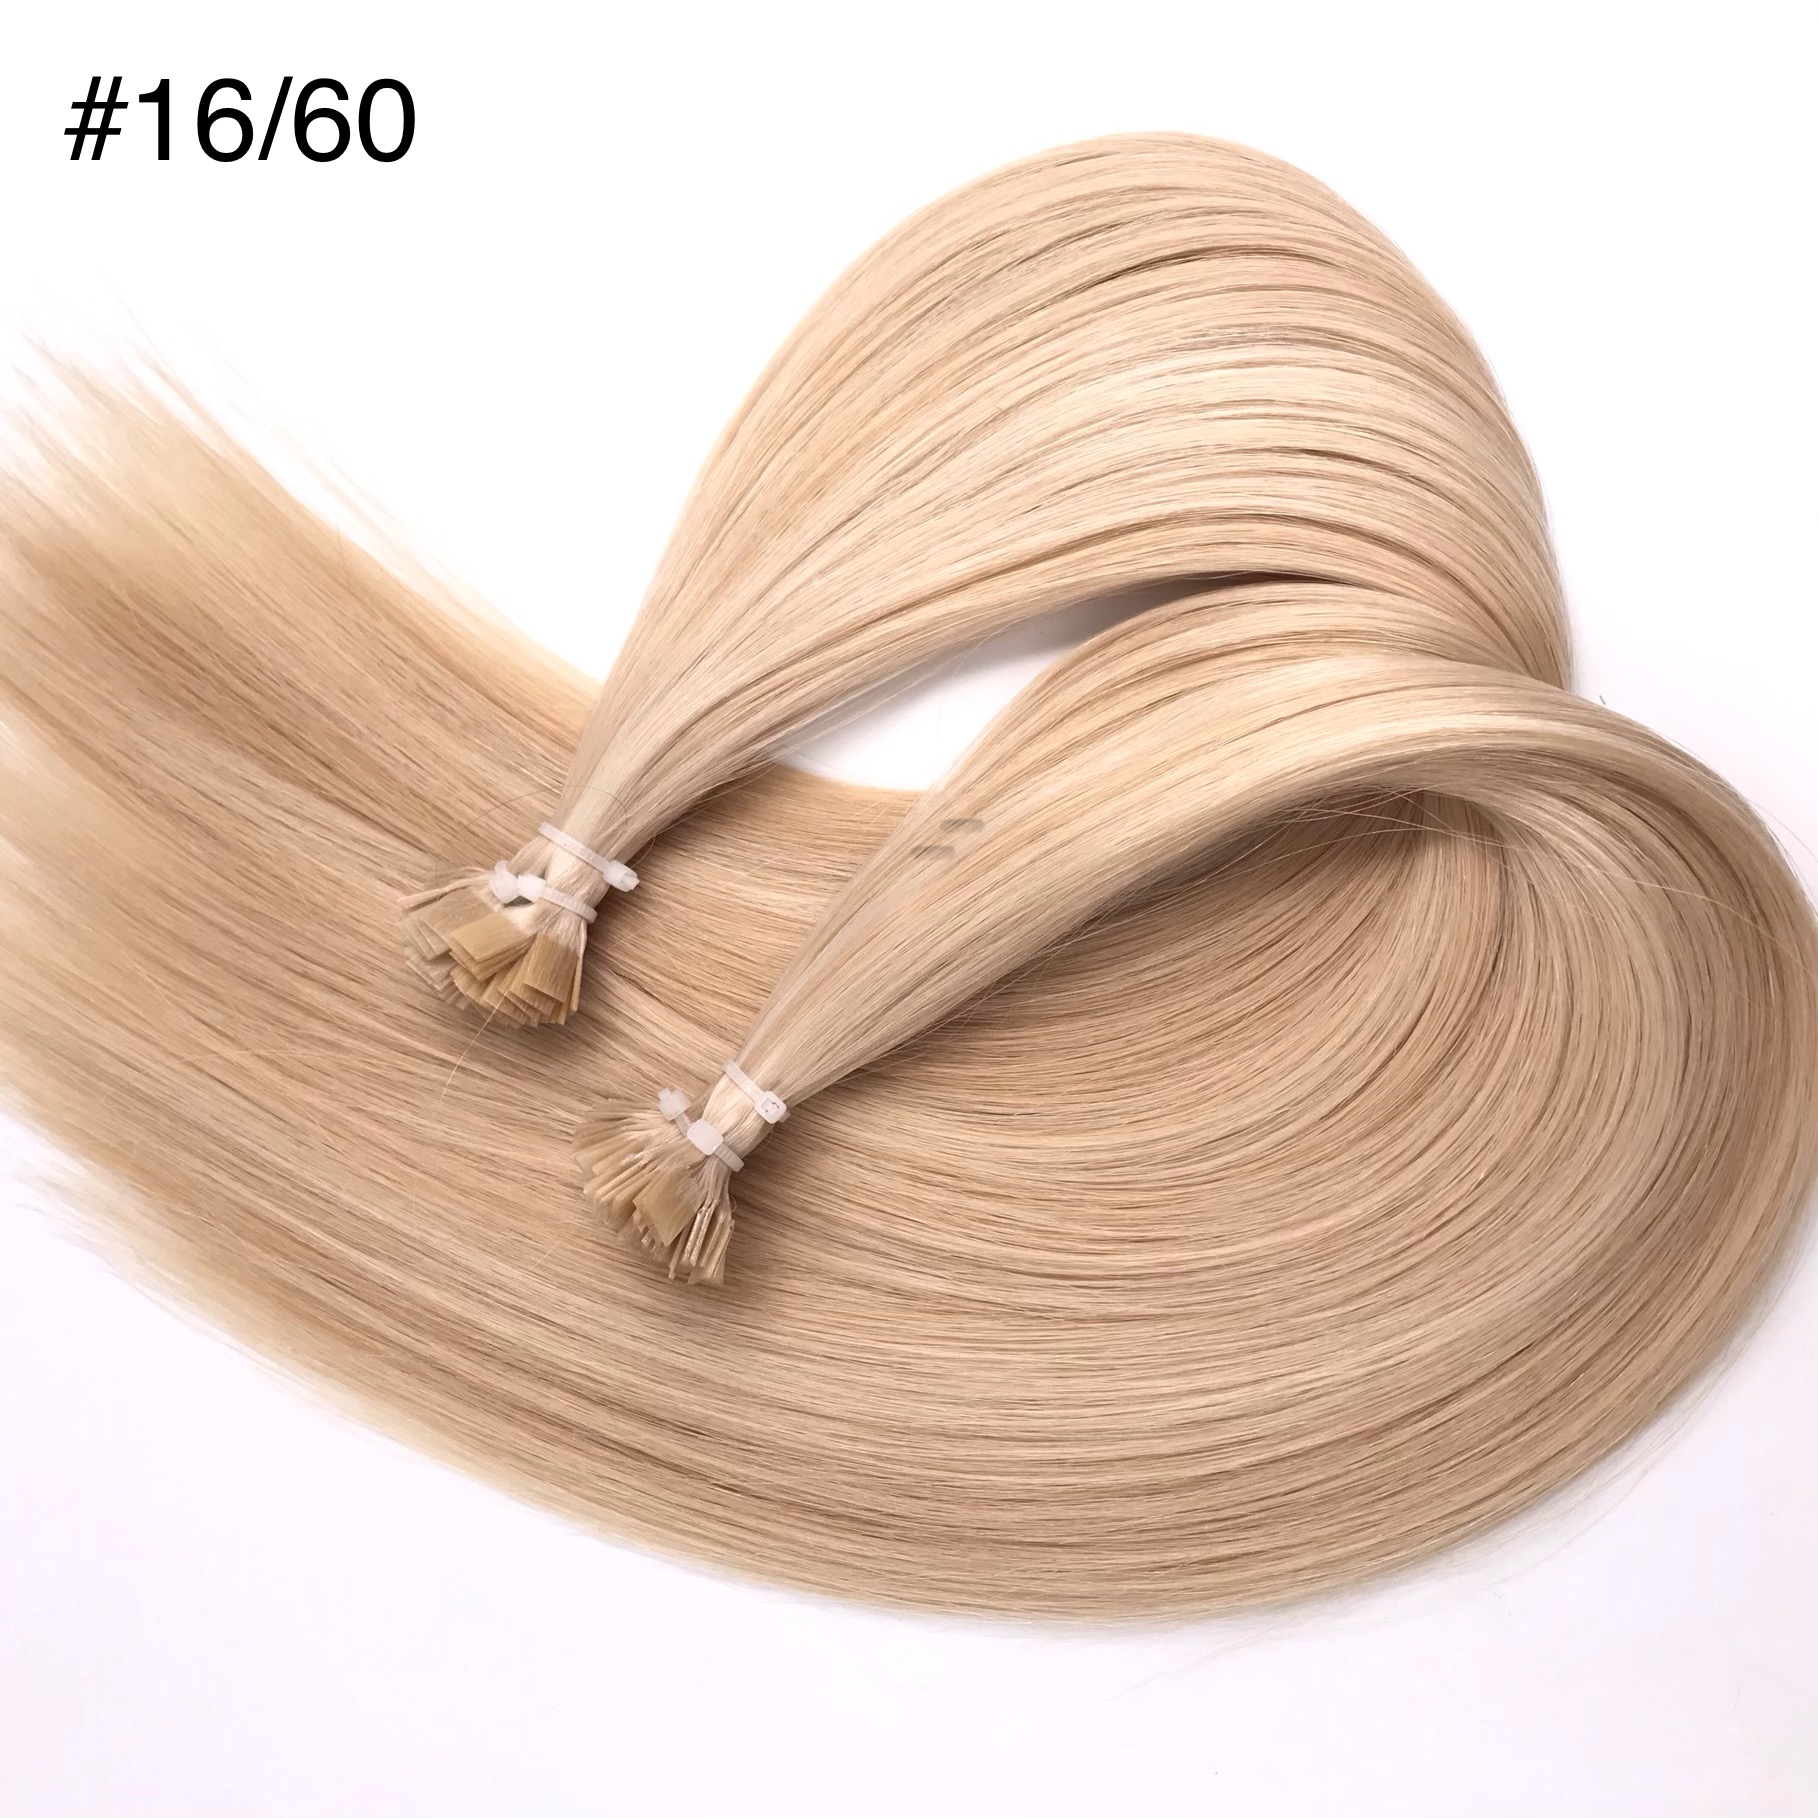  Top Quality Hair Extensions Vendor Wholesale  J14